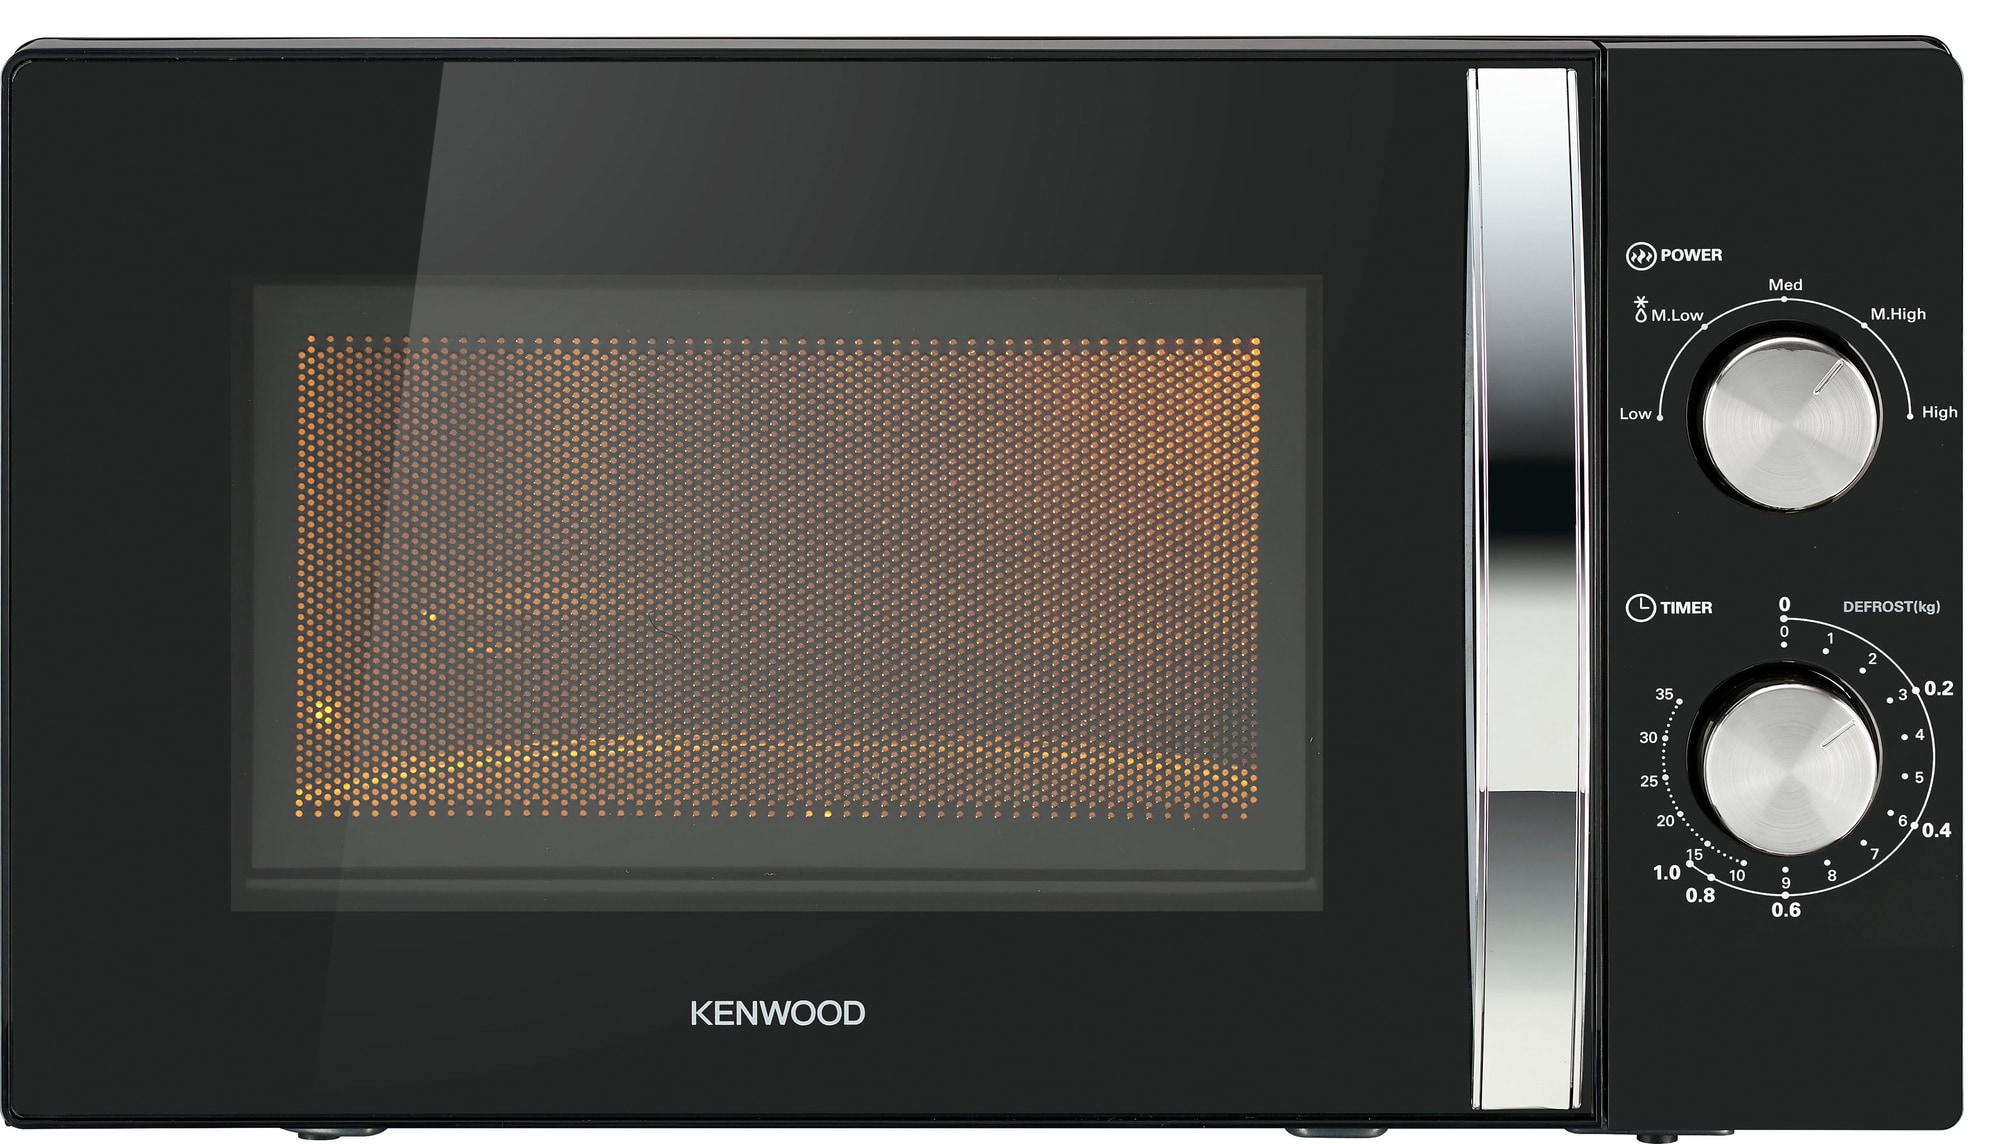 Kenwood mikroovn K20MB21E (sort) | Elgiganten